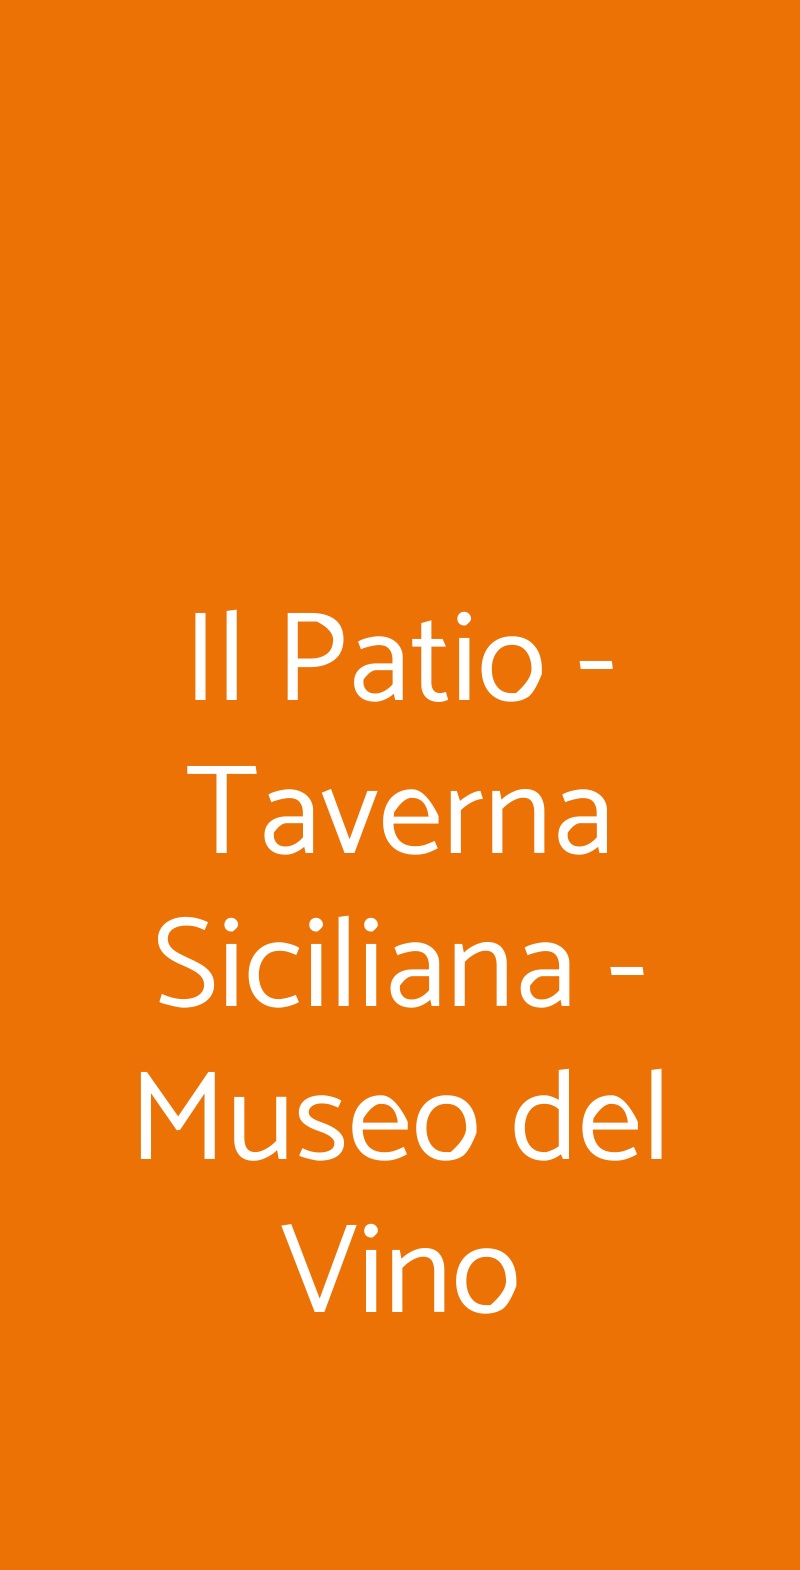 Il Patio - Taverna Siciliana - Museo del Vino Trapani menù 1 pagina